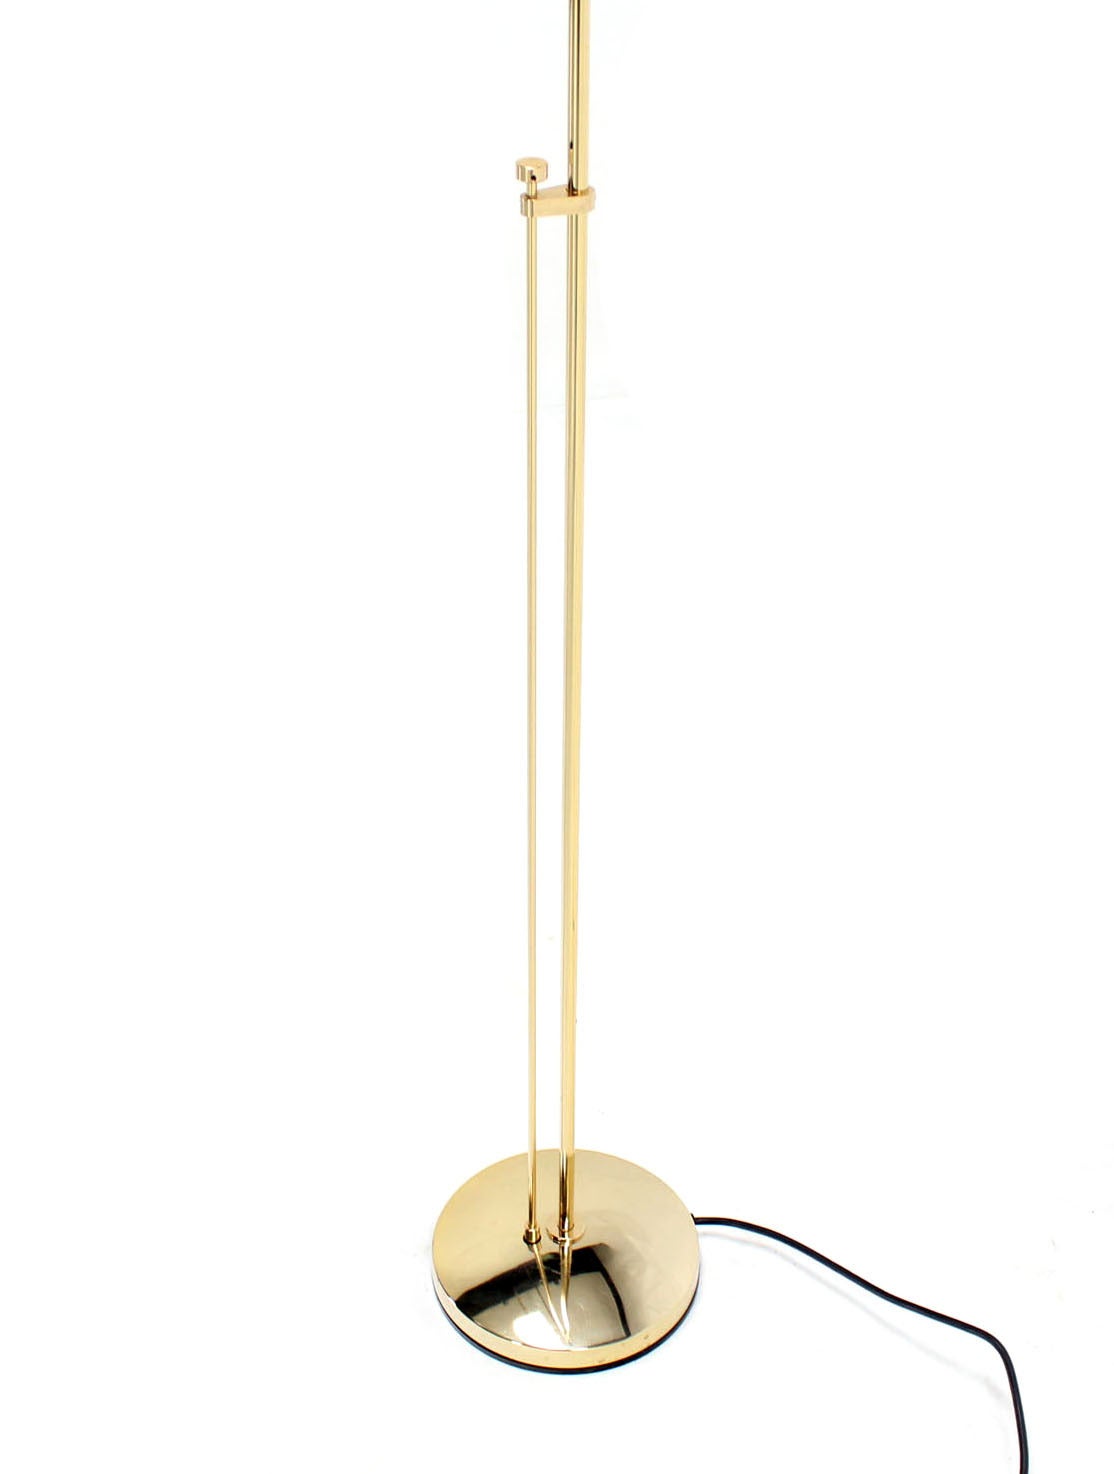 American Estiluz Adjustable Hallogen Floor Lamp with Dimmer